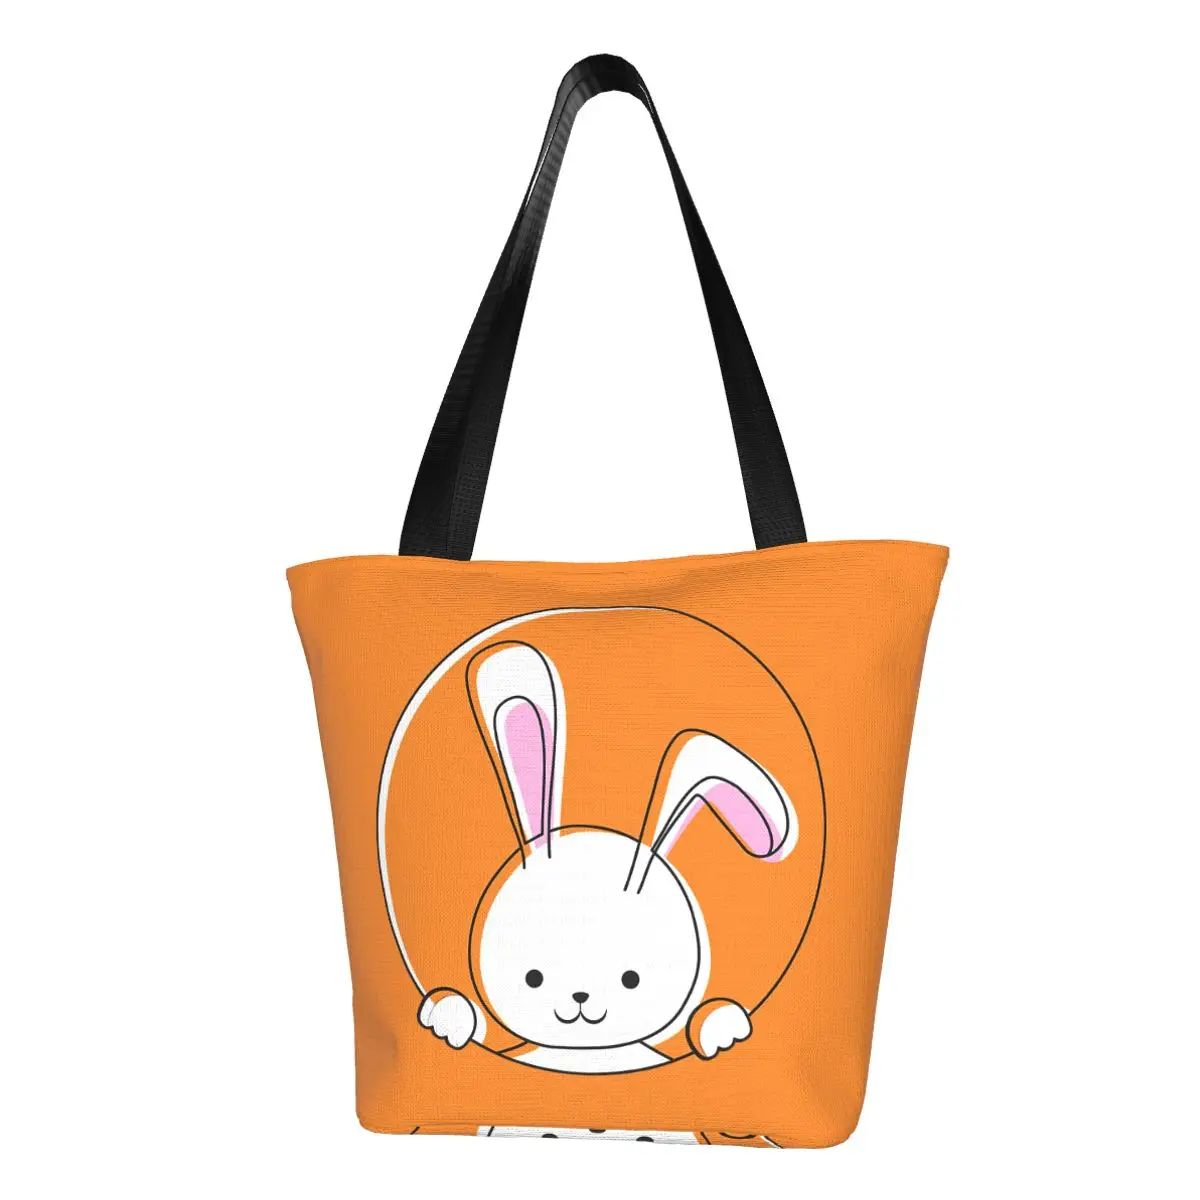 Bunny Face Polyester outdoor girl handbag, woman shopping bag, shoulder bag, canvas bag, gift bag